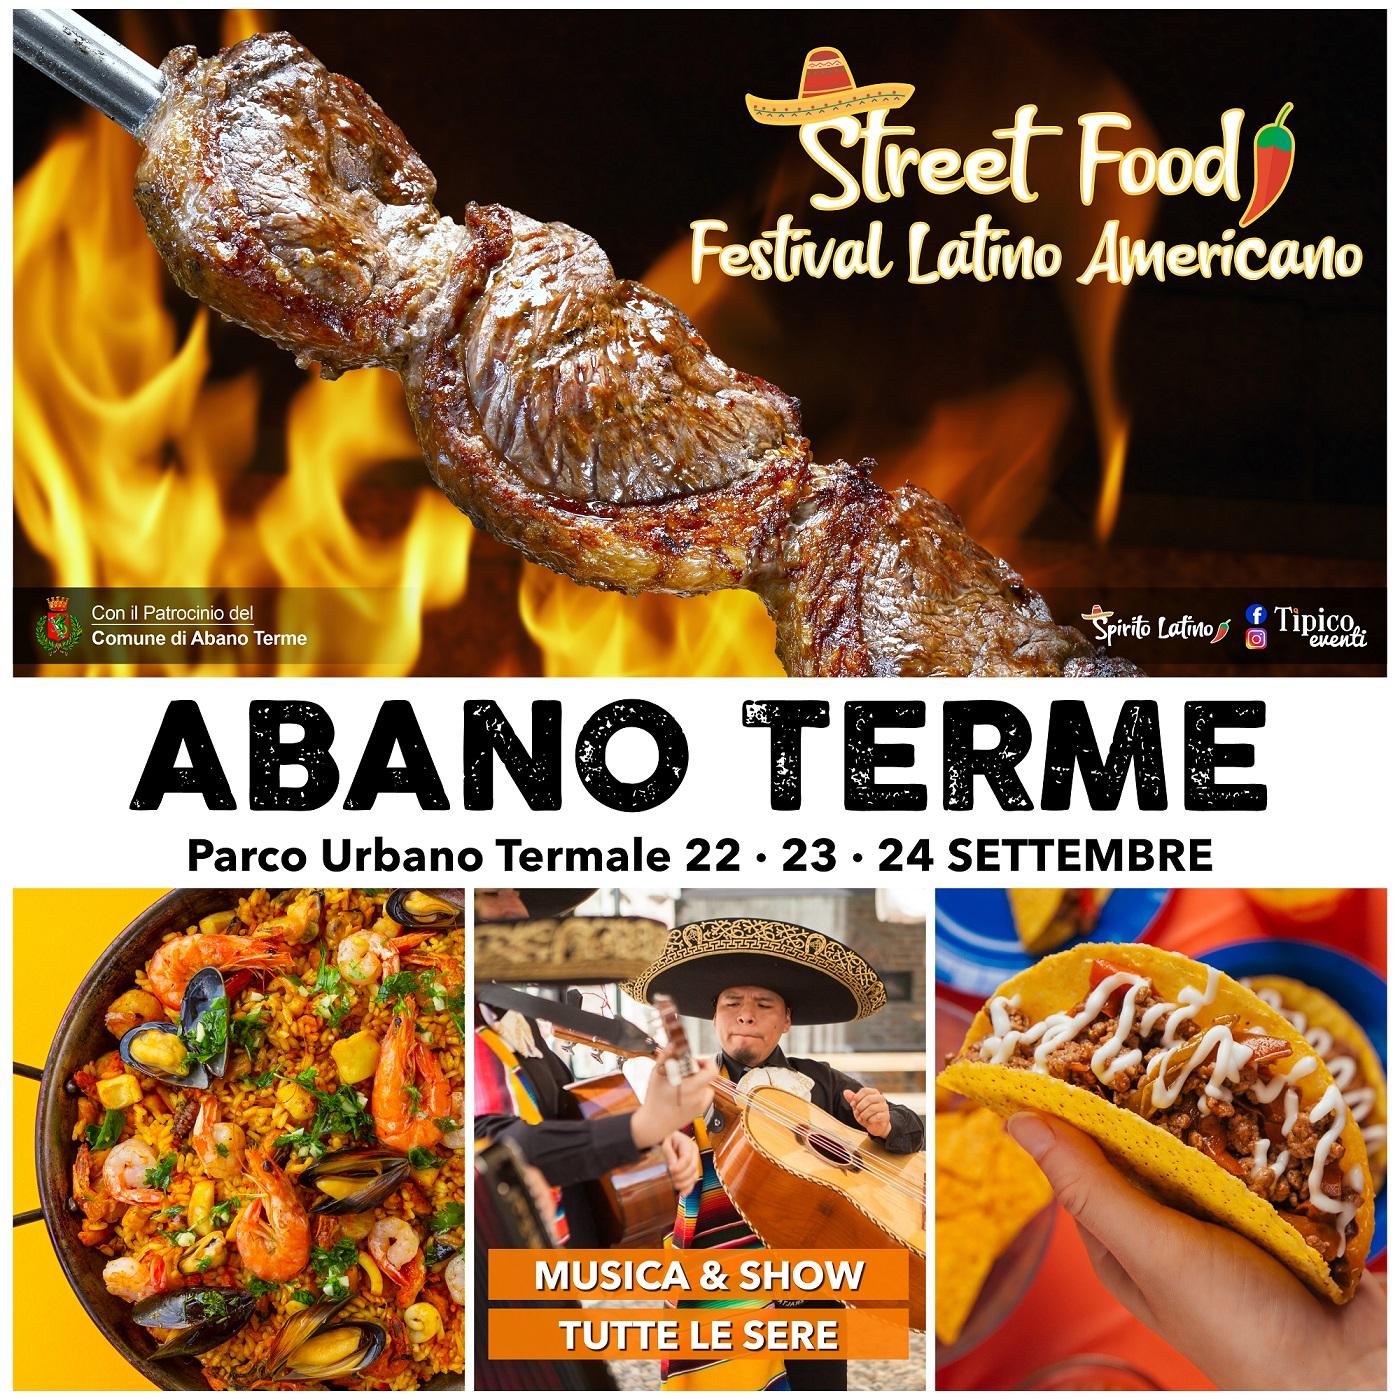 Festival Latino Americano 